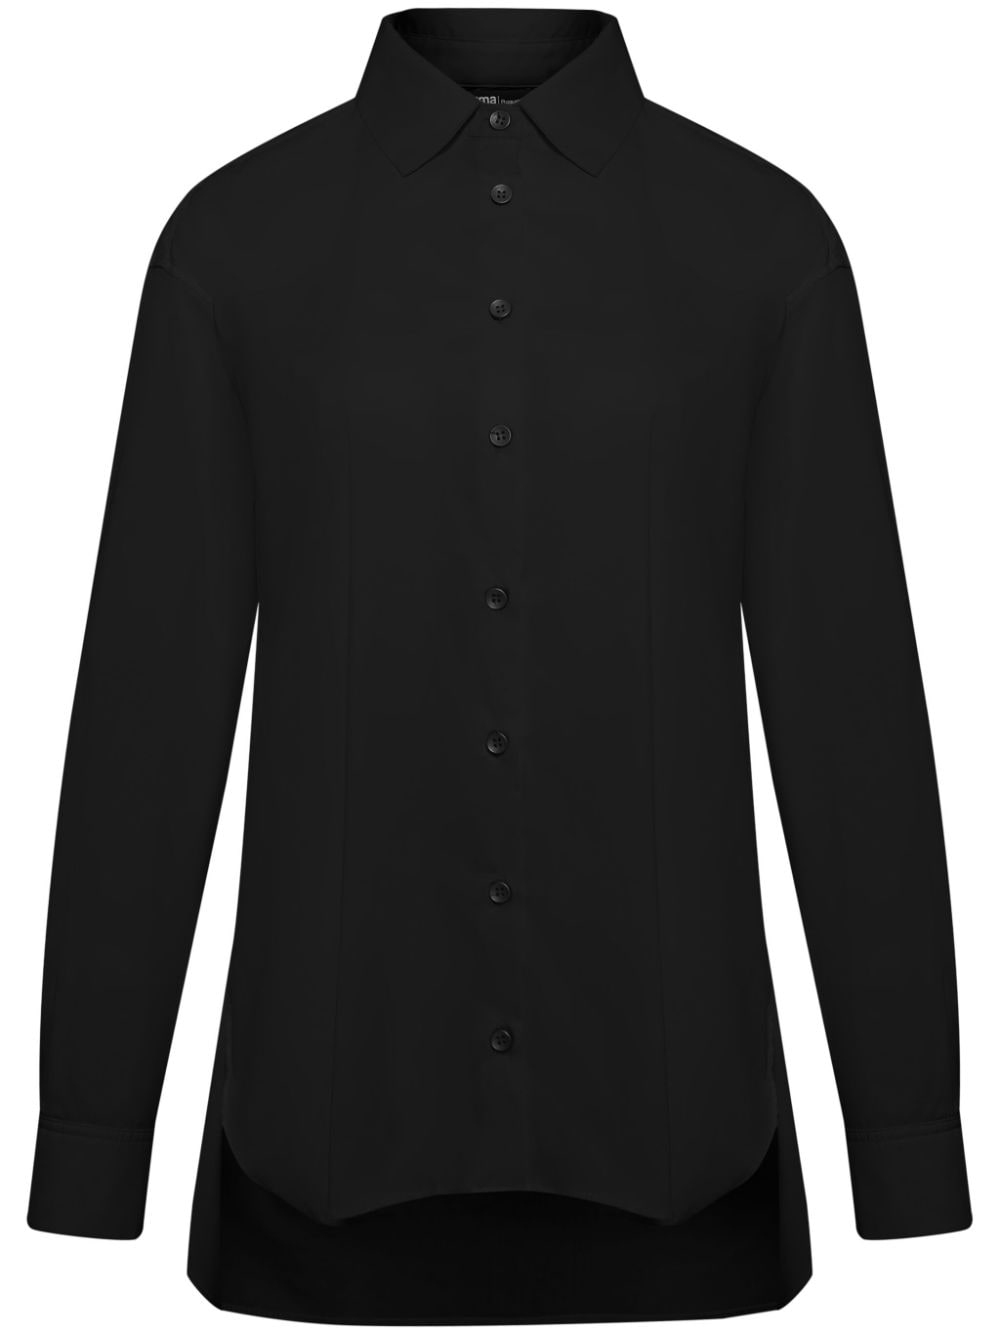 Uma | Raquel Davidowicz long-sleeve cotton shirt - Black von Uma | Raquel Davidowicz